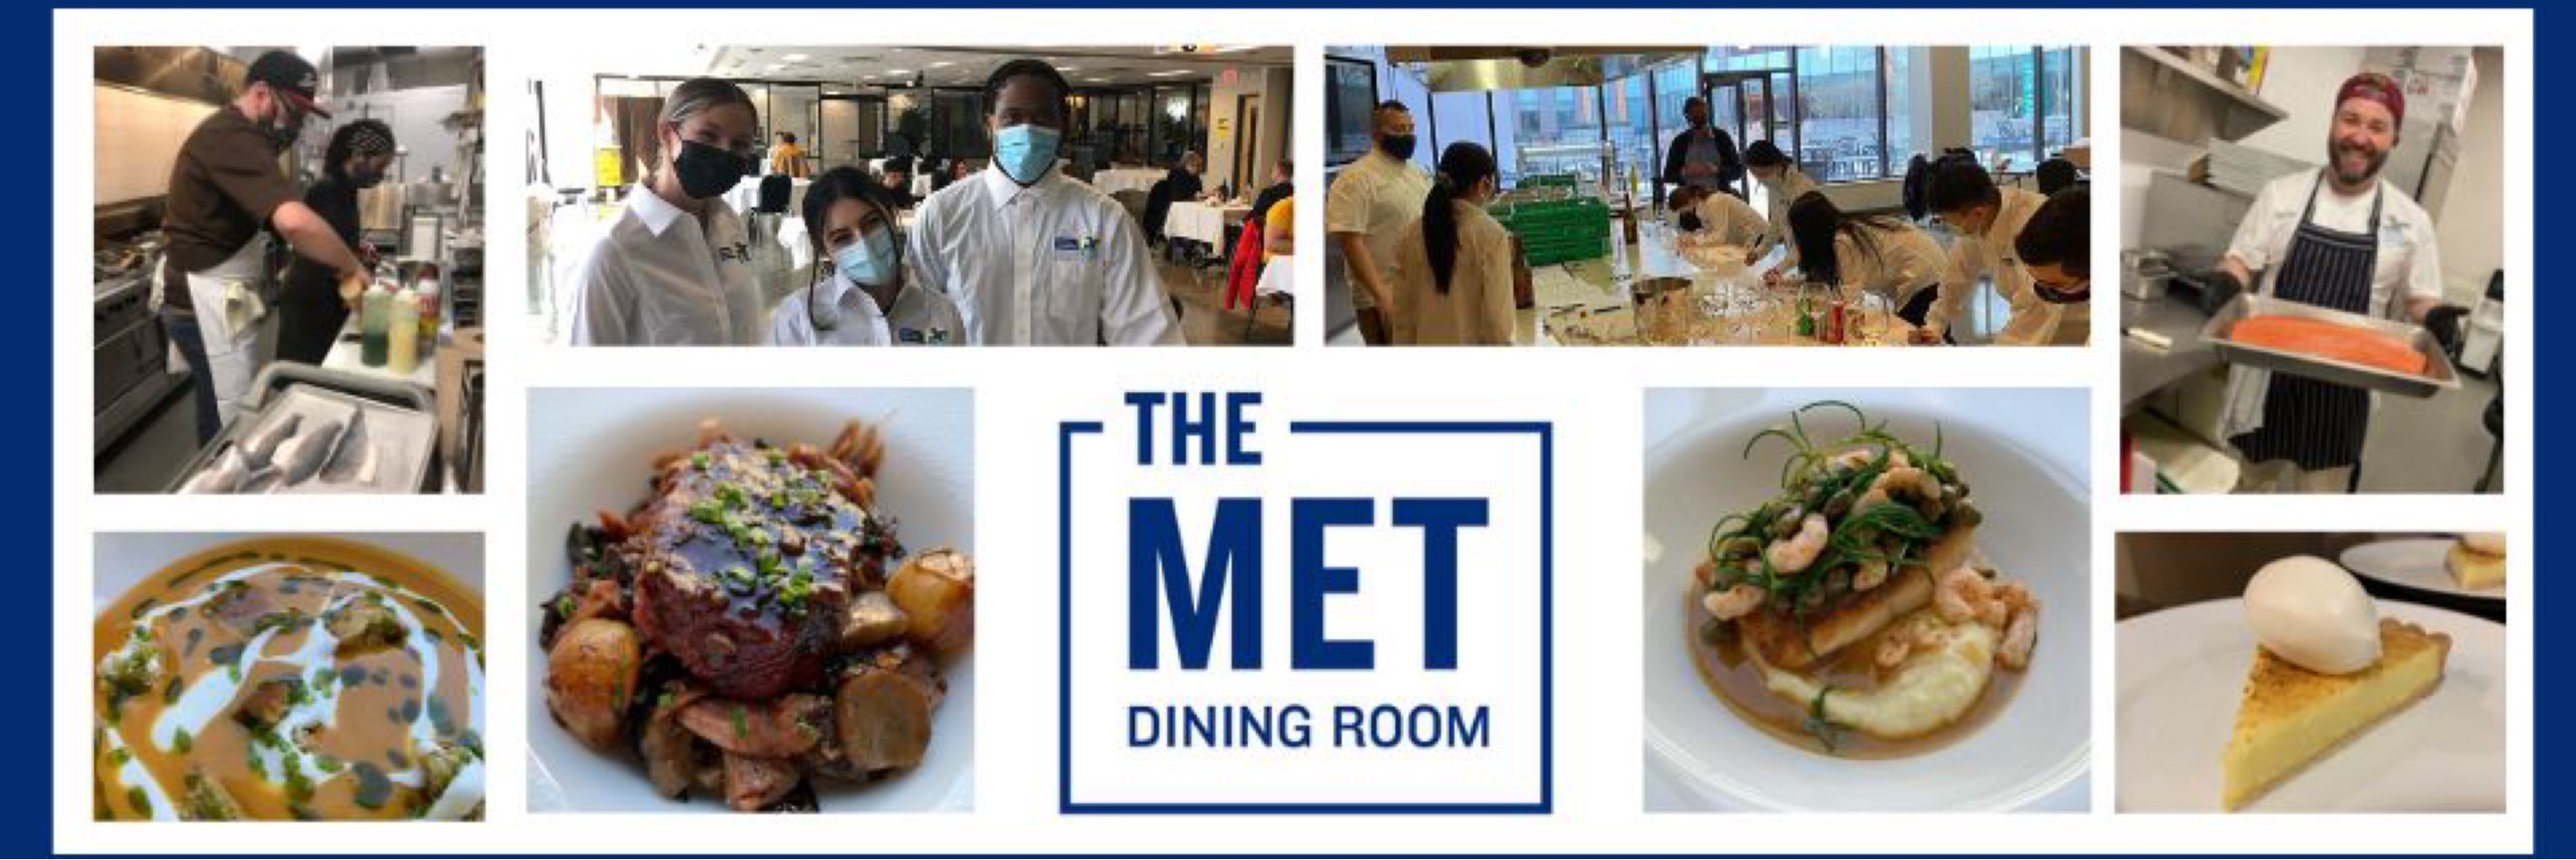 The Met Dining Room Floor 4 Menu